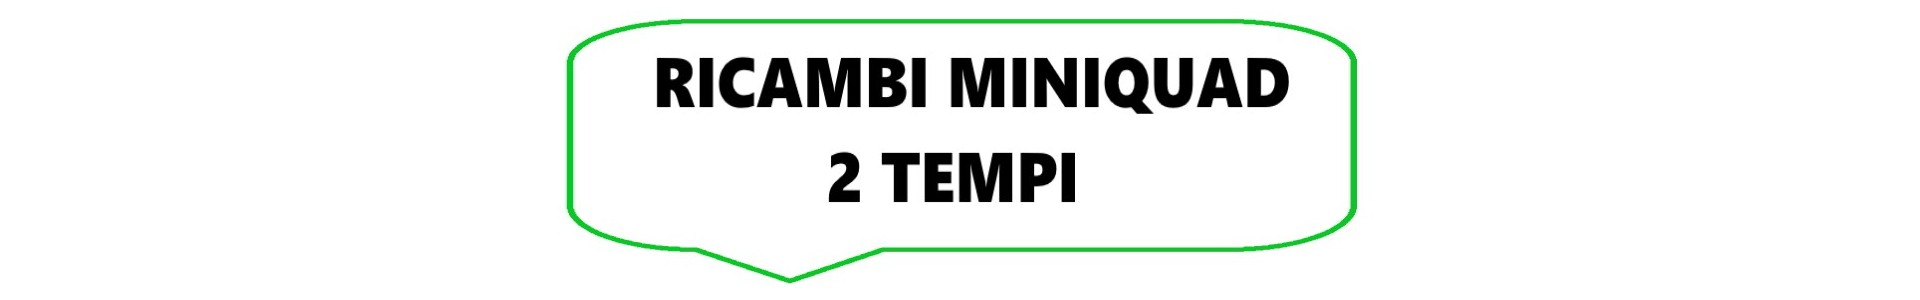 Ricambi MiniQuad 2 Tempi